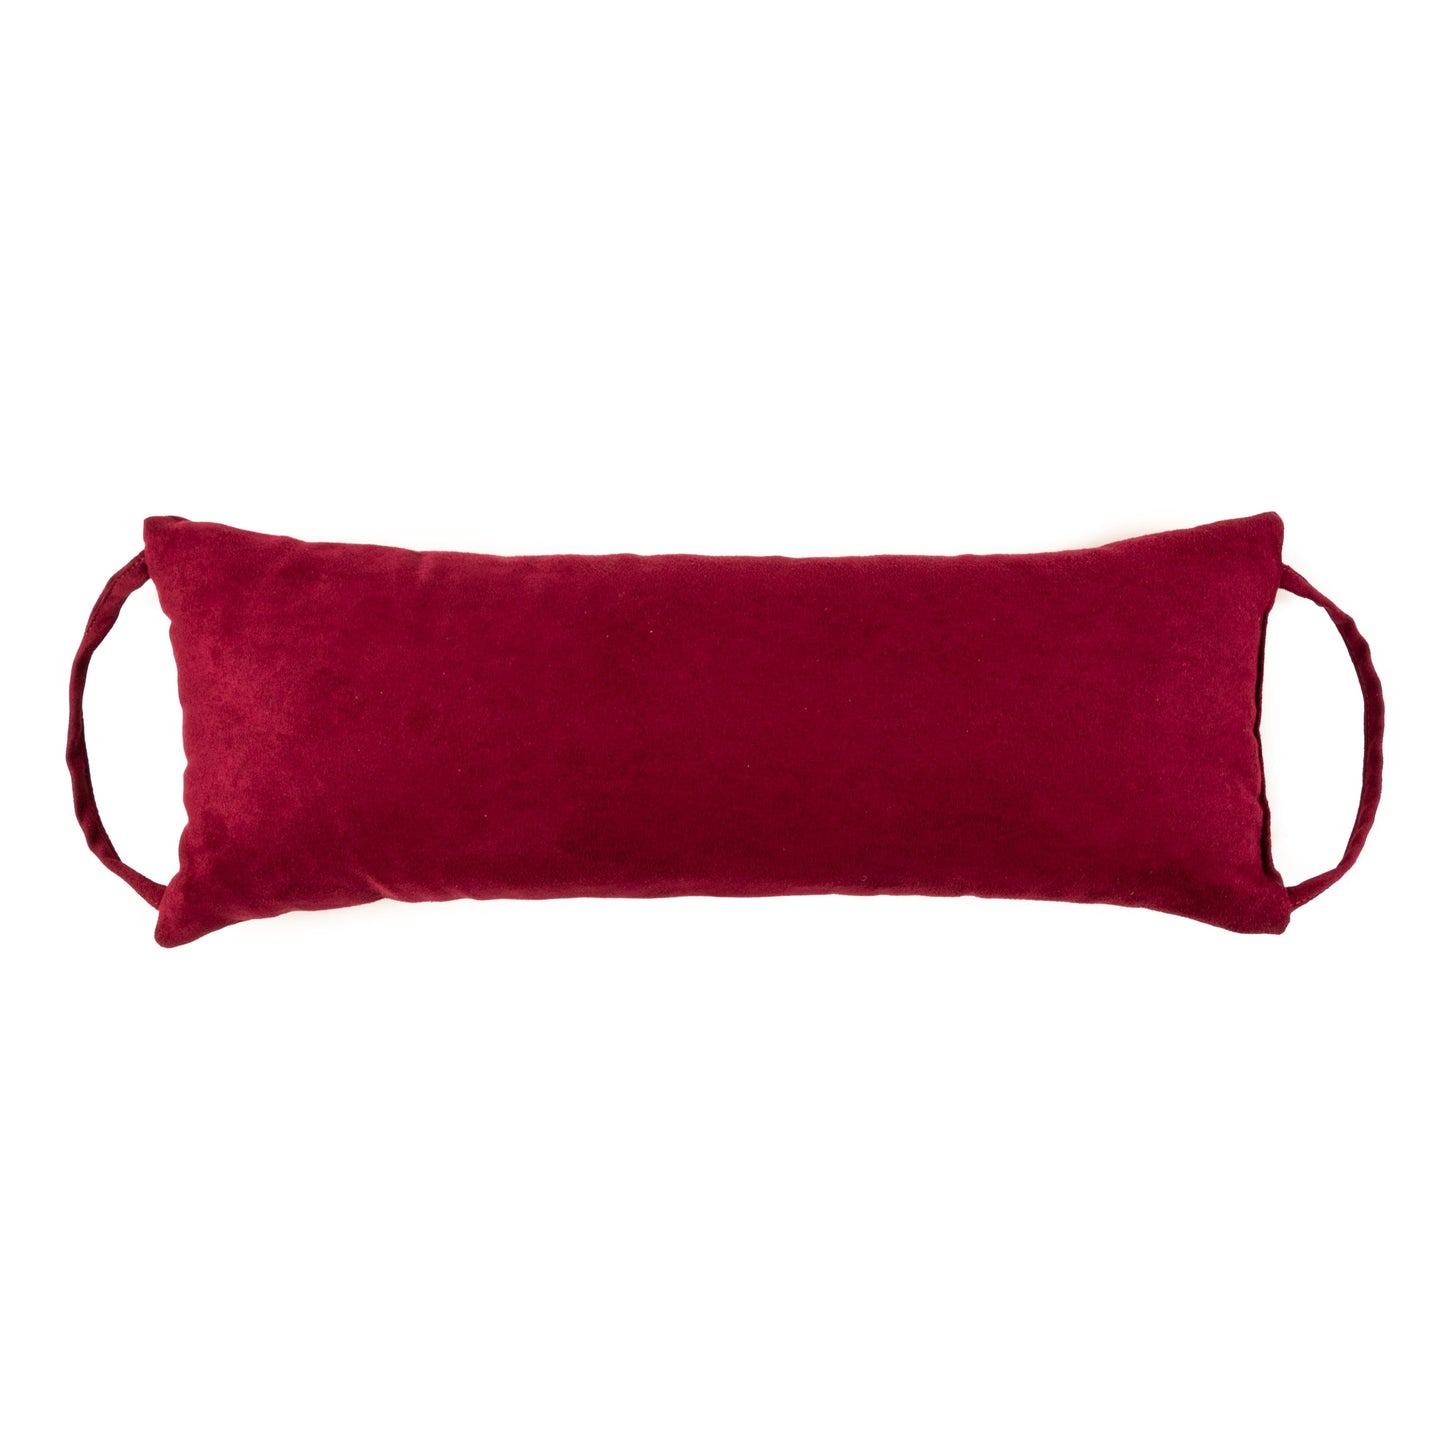 Barnett Home Decor | Microsuede Wine Travel Pillow | Burgundy Neck Roll Pillow | 